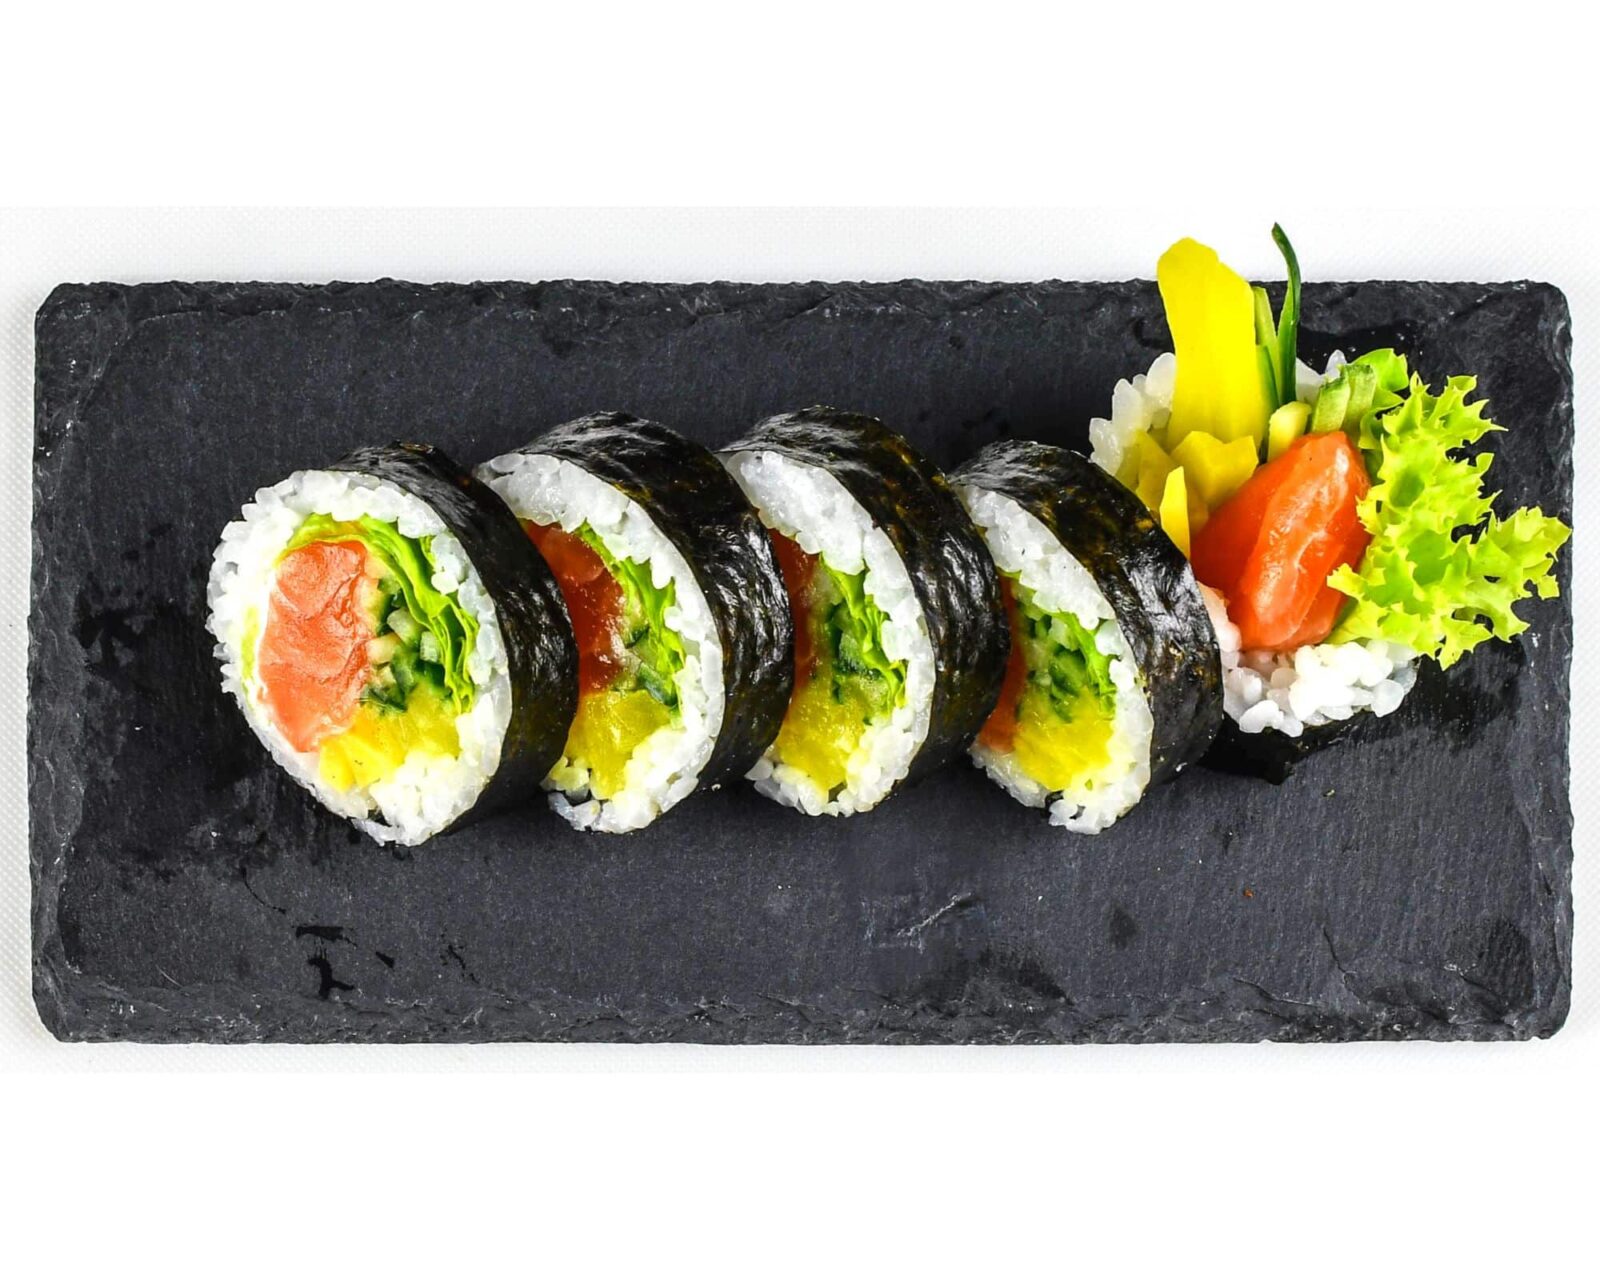 Die Philosophie hinter Sushi: Mehr als nur Essen